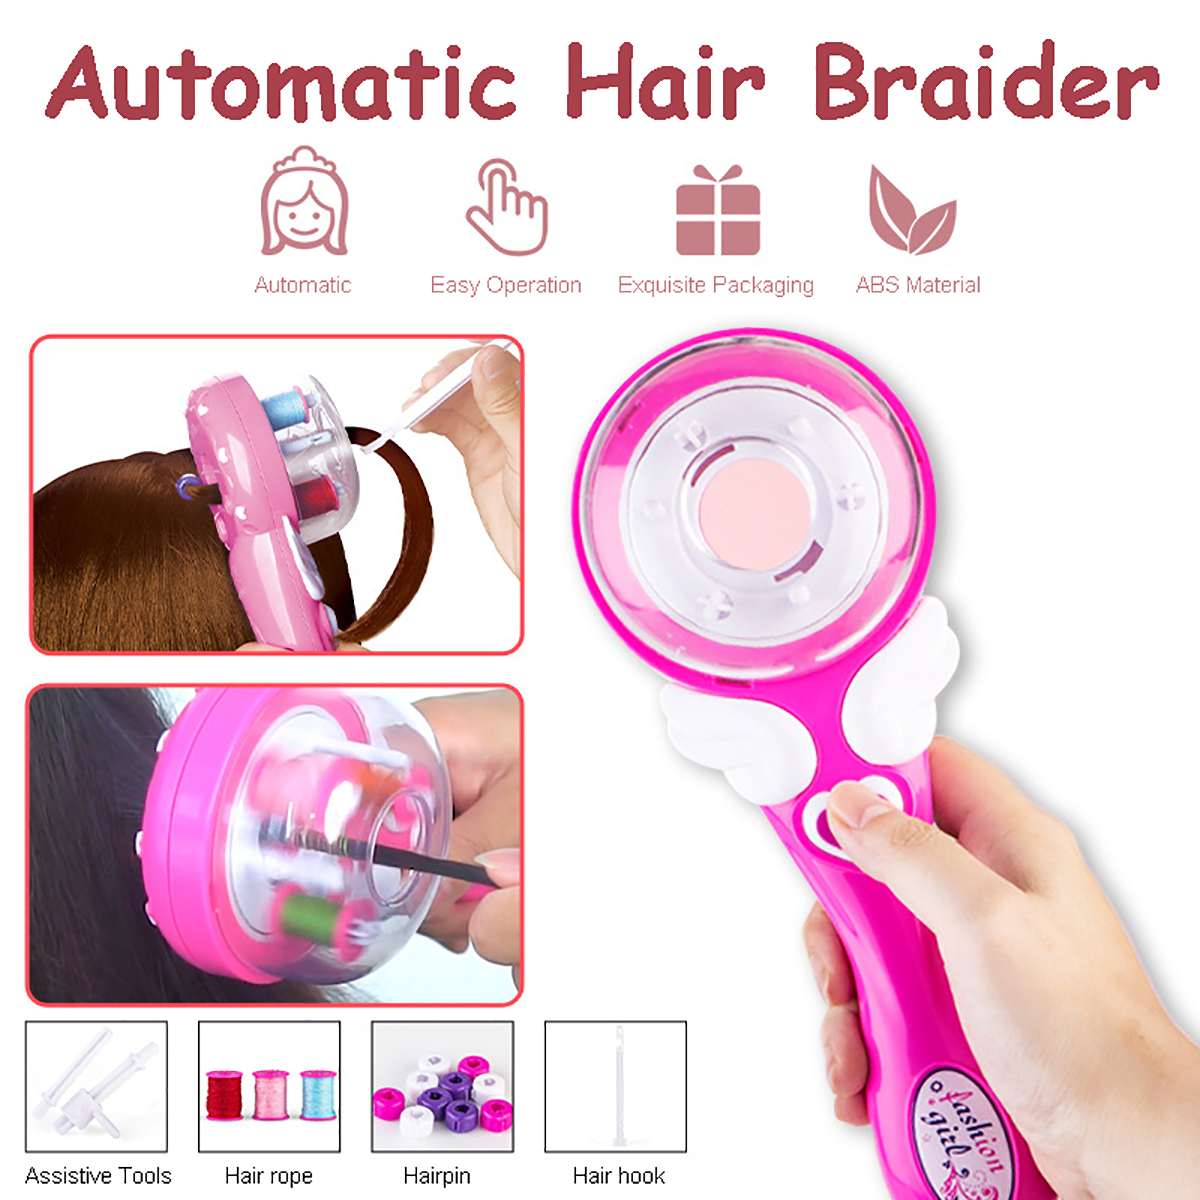 Hair Styling Tools Haar Braider Automatisch Braid Machine Elektrische Hennep Bloemen Haar Braide Haar Braider Apparaat Kit